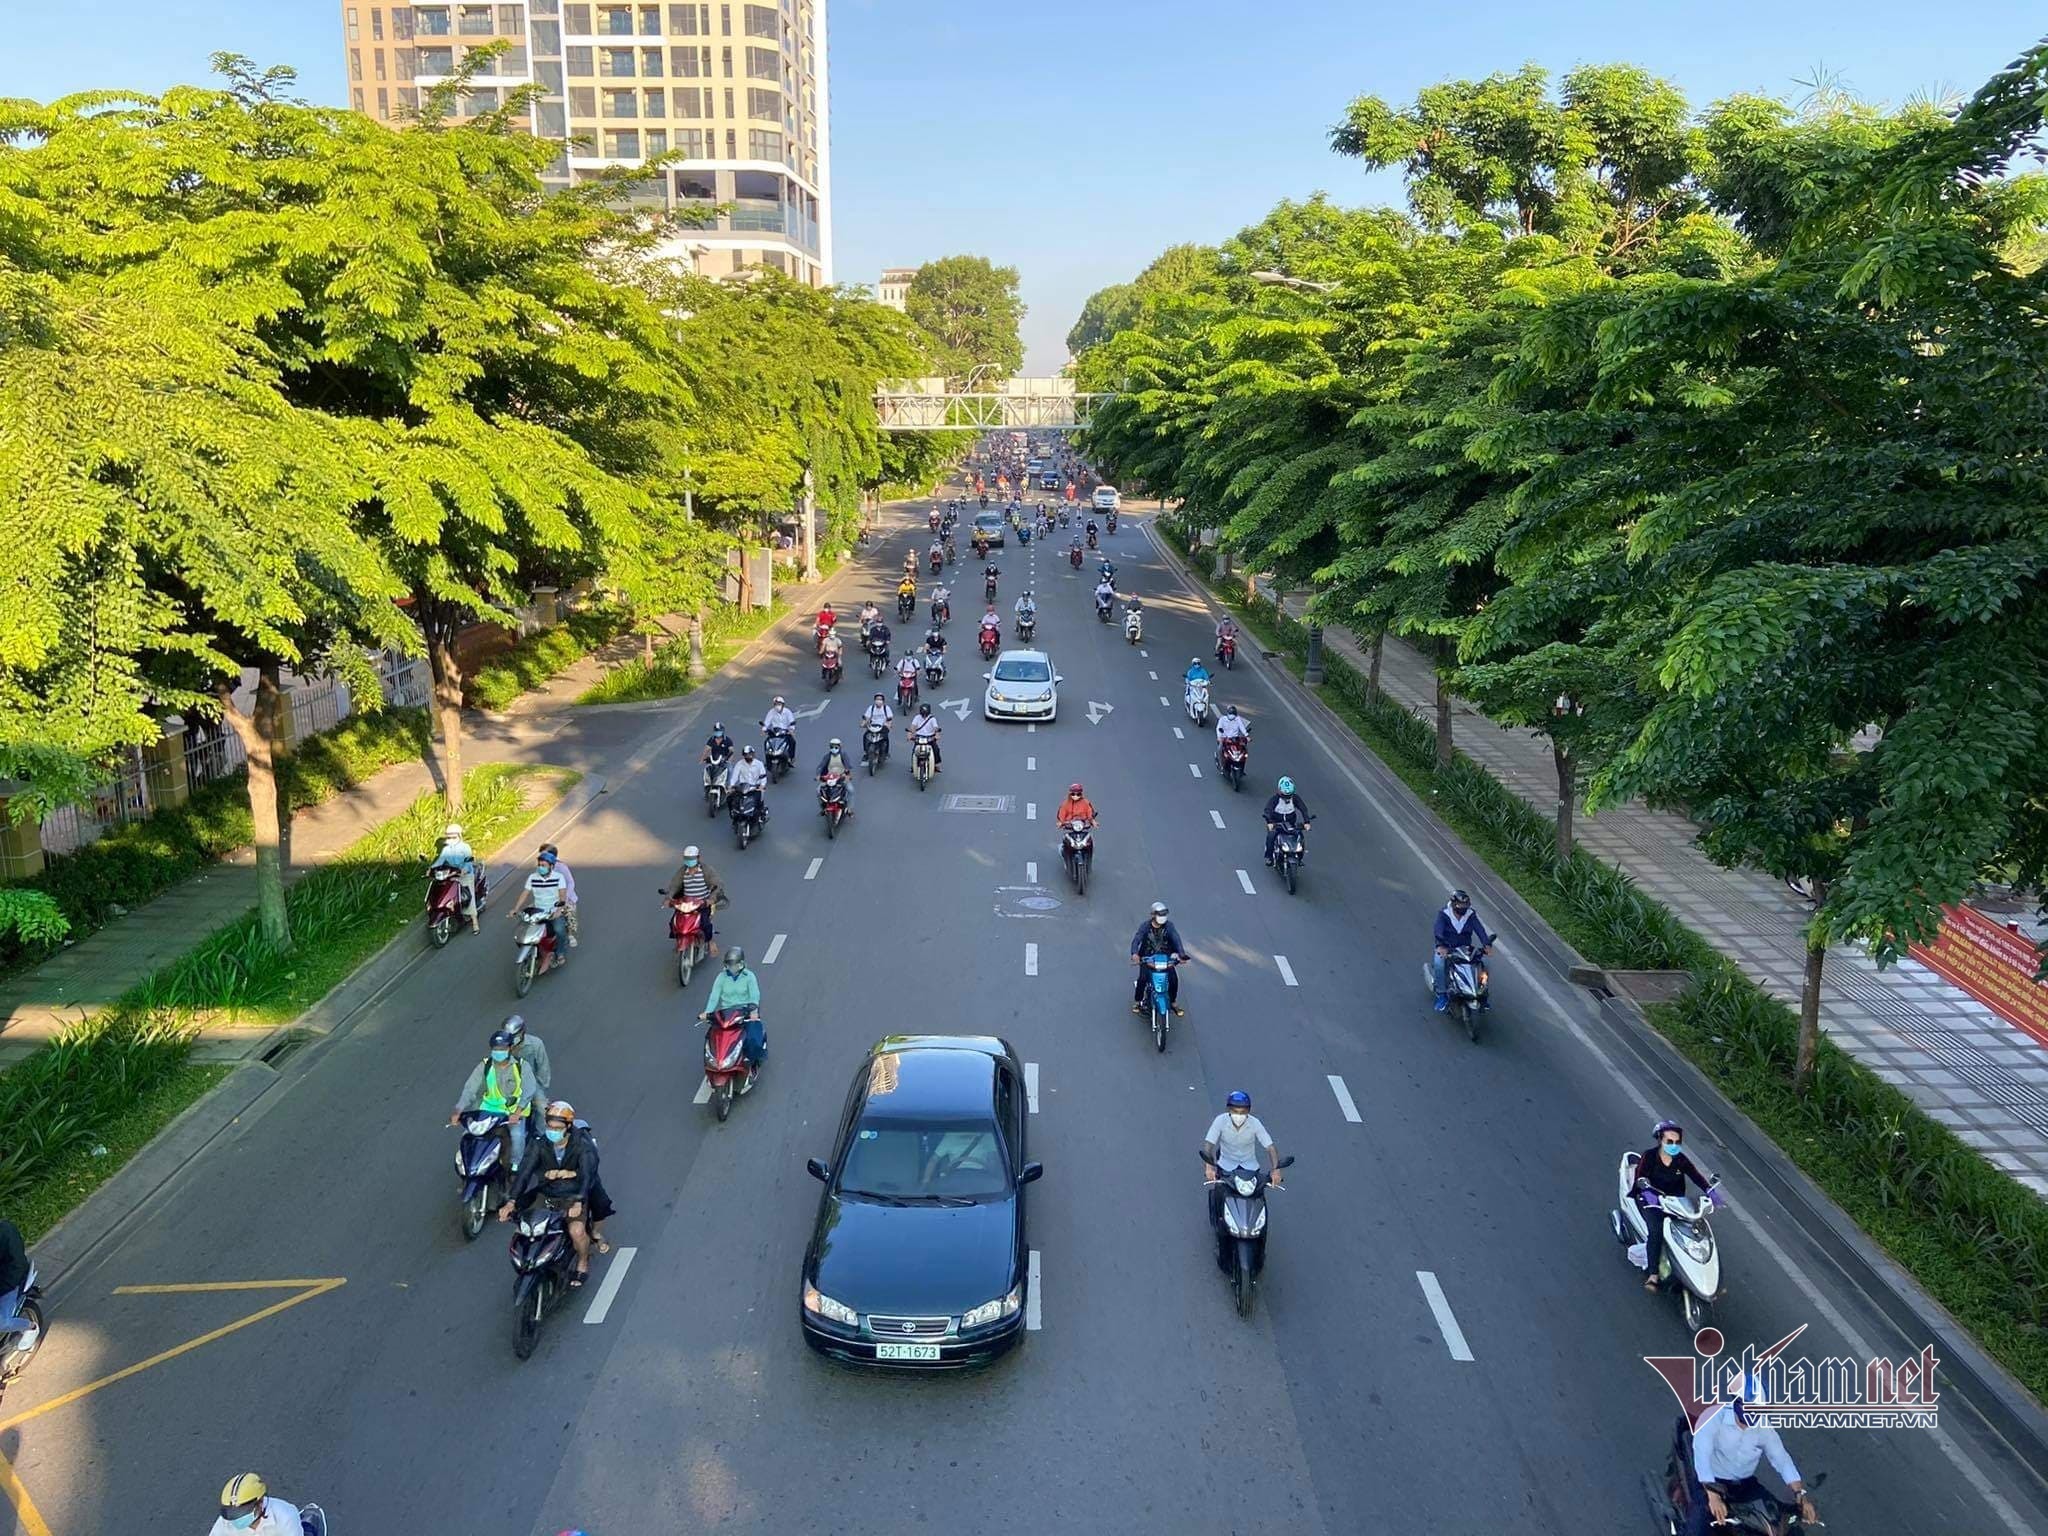 TP.HCM: Thành phố Hồ Chí Minh - trái tim của miền Nam, nơi giao thoa của văn hóa, lịch sử và hiện đại. Hãy khám phá những nét đẹp đặc trưng của thành phố sôi động này và tìm hiểu về lịch sử và văn hóa đa dạng của nơi này.